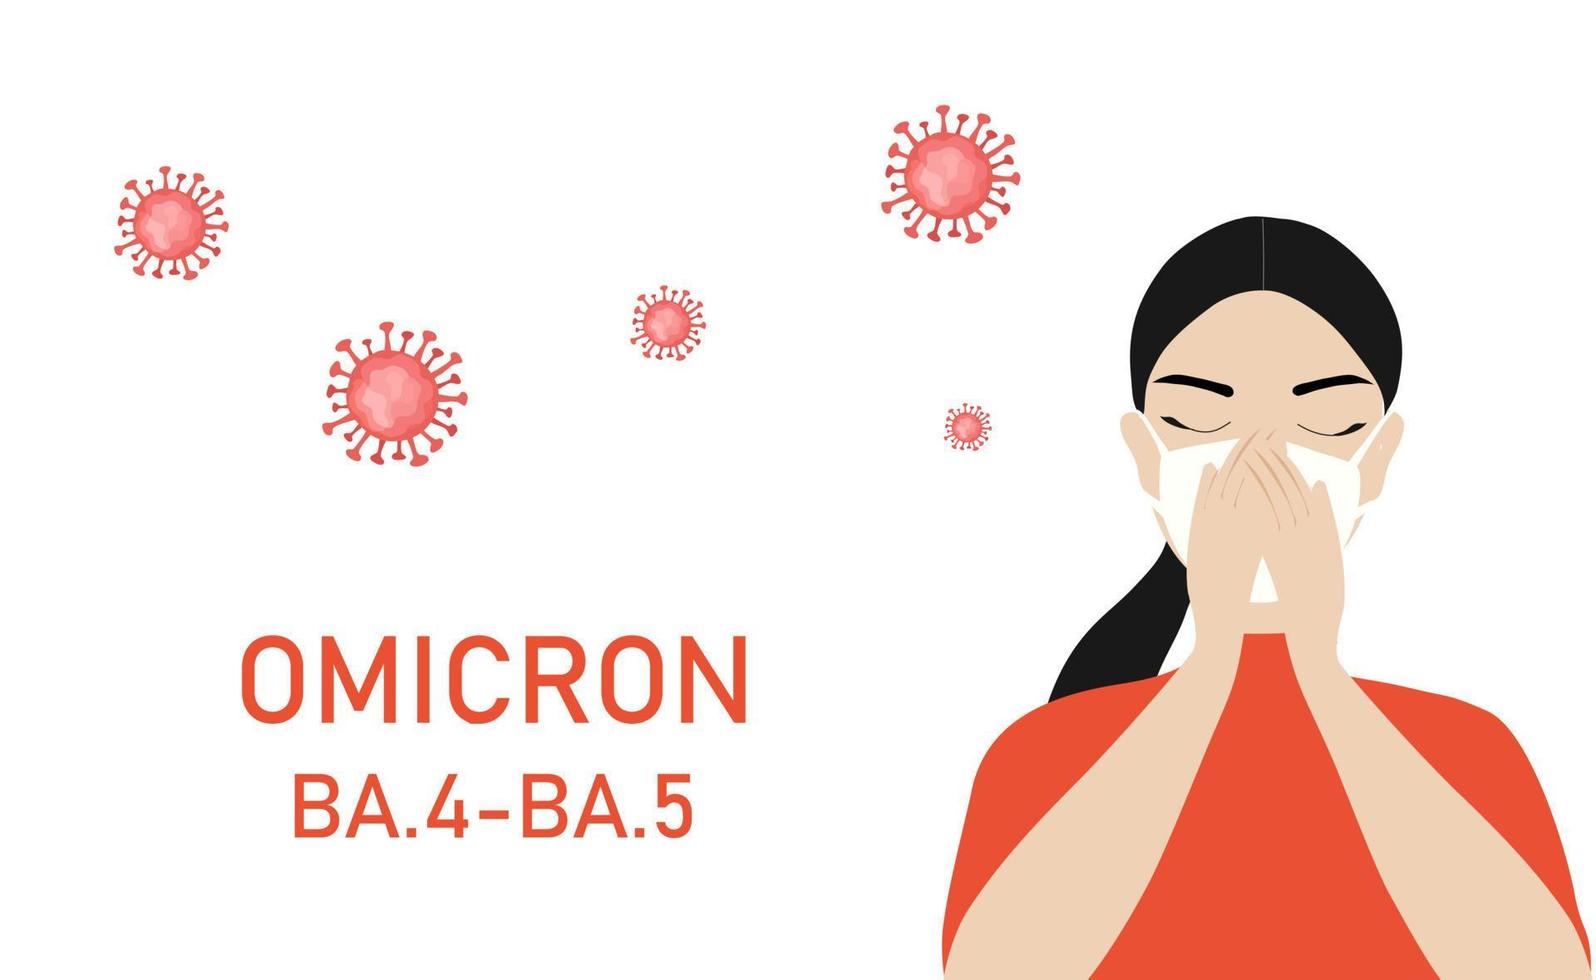 variante omicron ba.4-ba.5 covid-19. nouvelle souche de coronavirus. femme avec masque facial toux illustration vectorielle vecteur